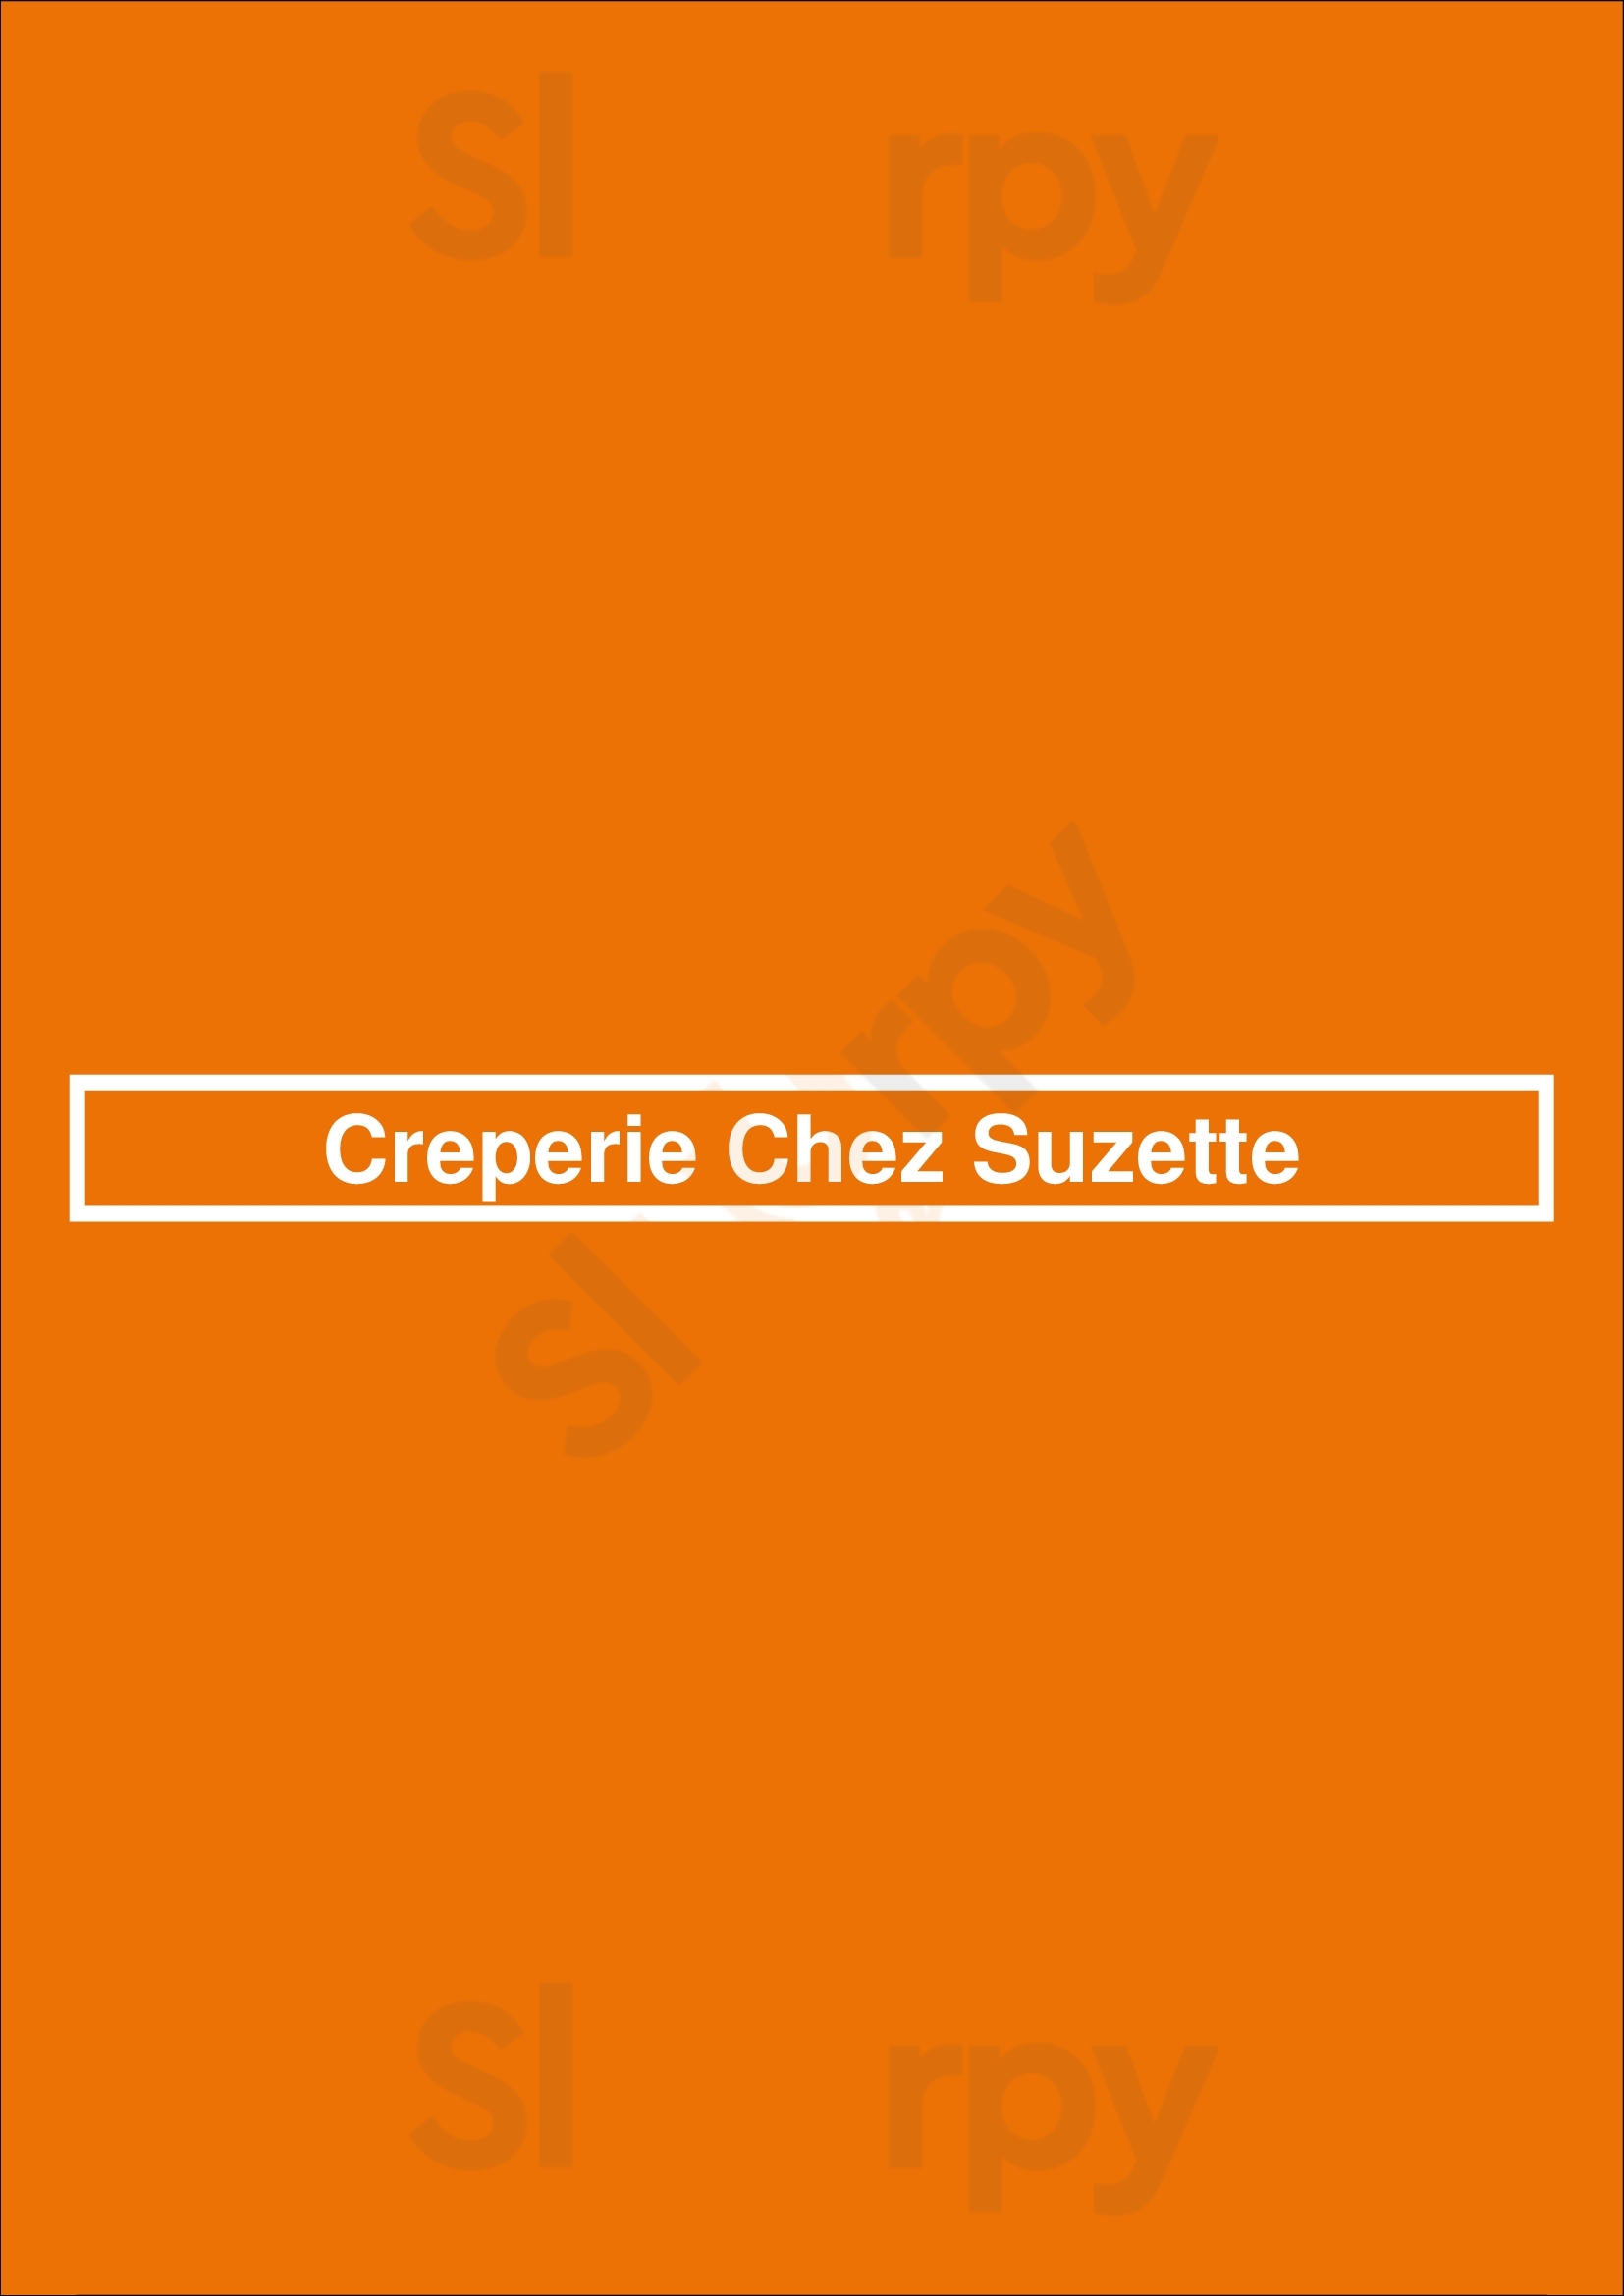 Creperie Chez Suzette Montreal Menu - 1